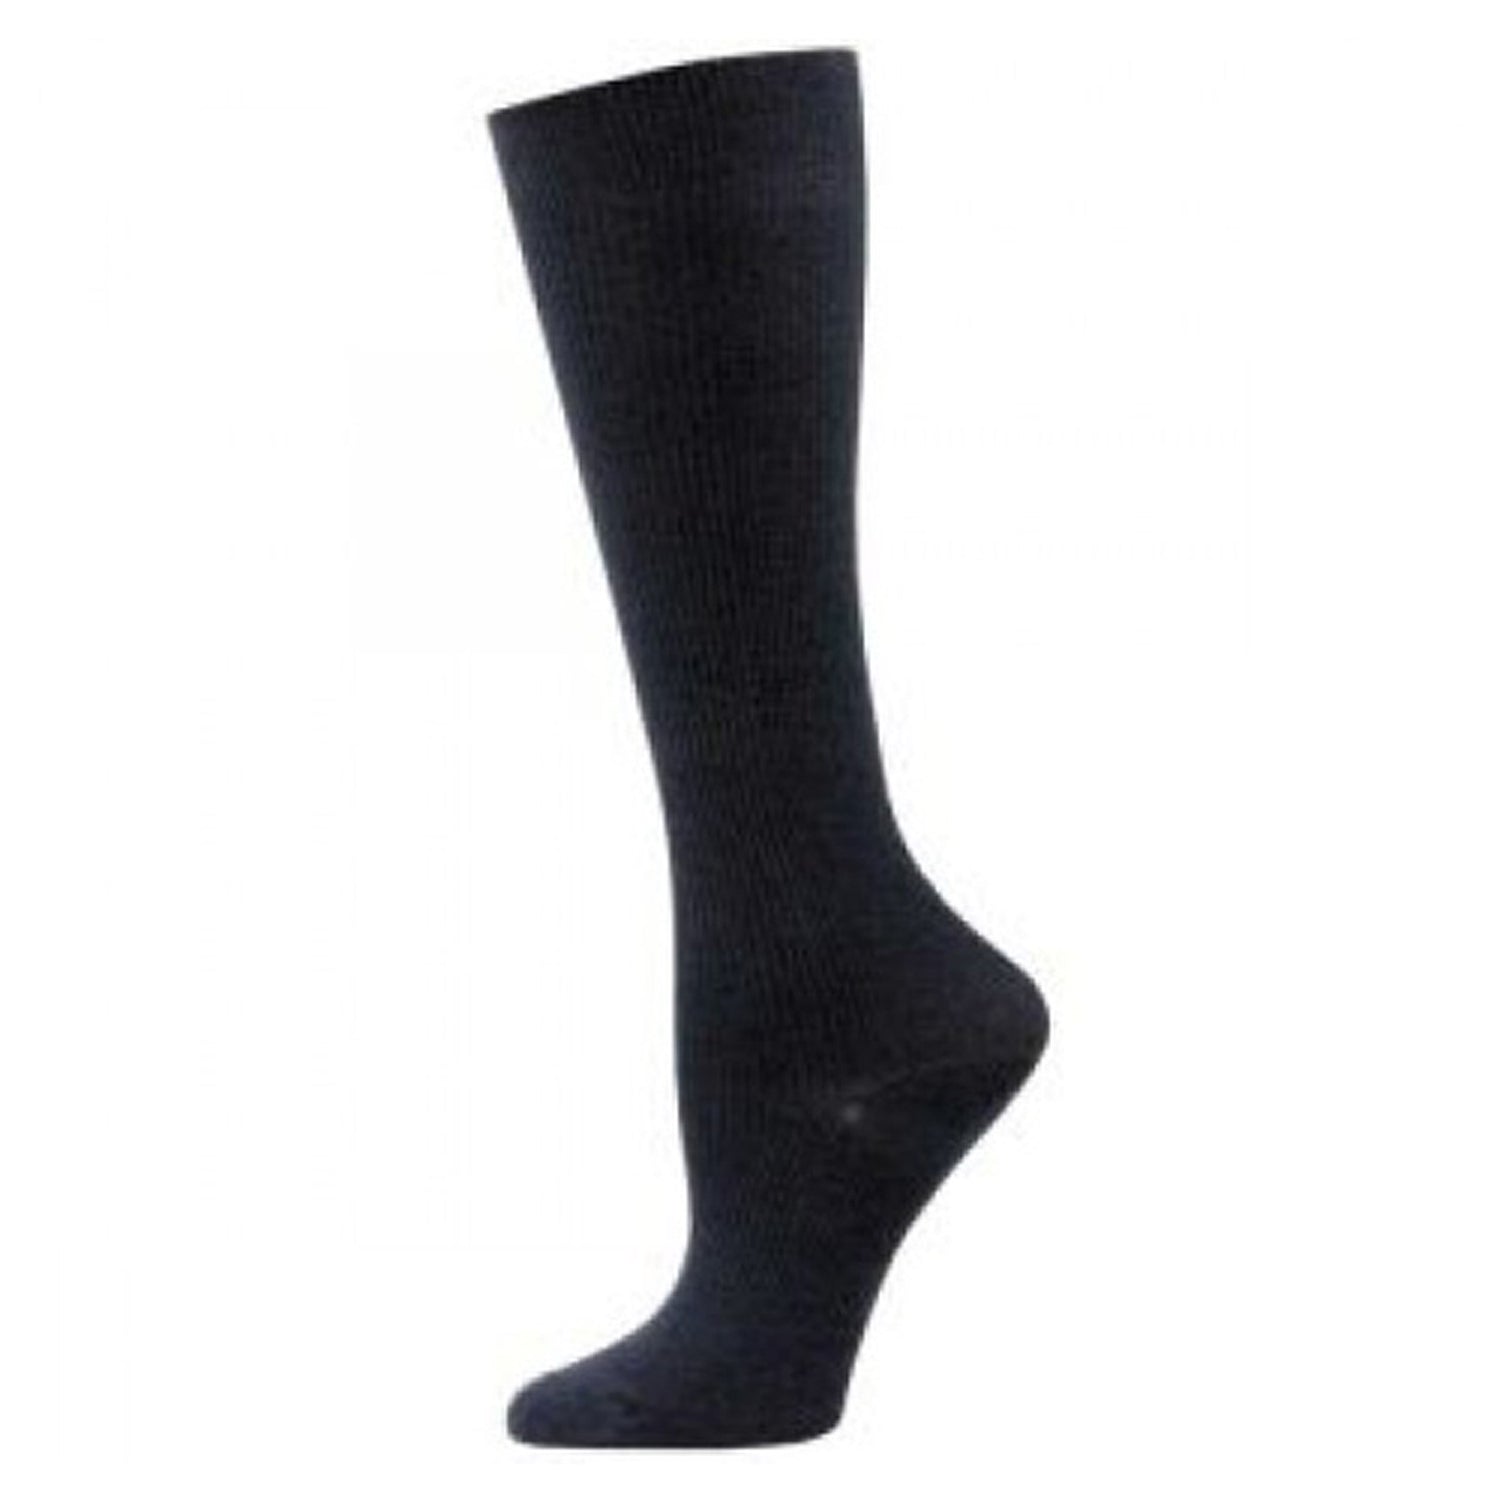 Peltz Shoes  Unisex Think Medical Solid Compression Socks Black 01651